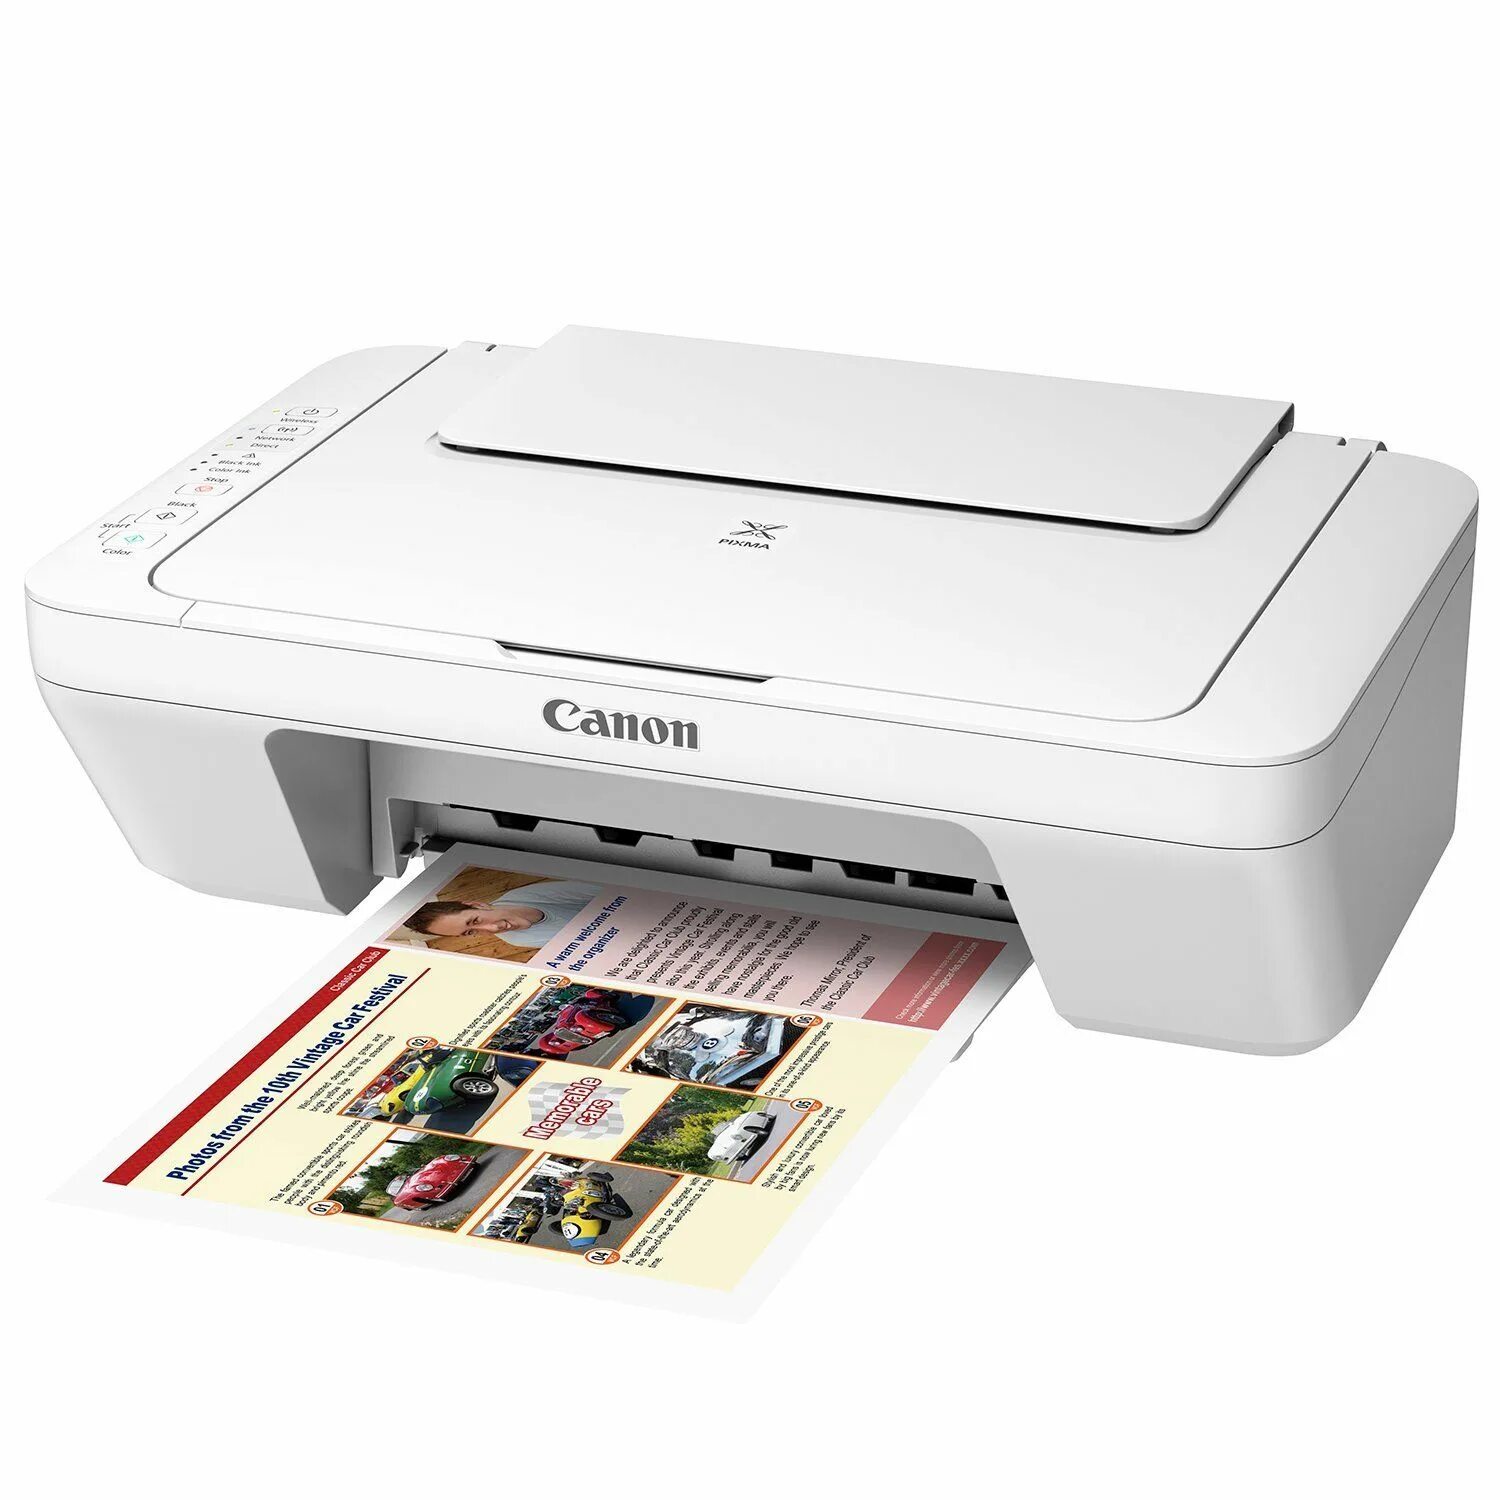 1 принтер купить недорого. Canon PIXMA mg2940. Canon 3050. Принтер Санон 6202. Принтер Canon 320.